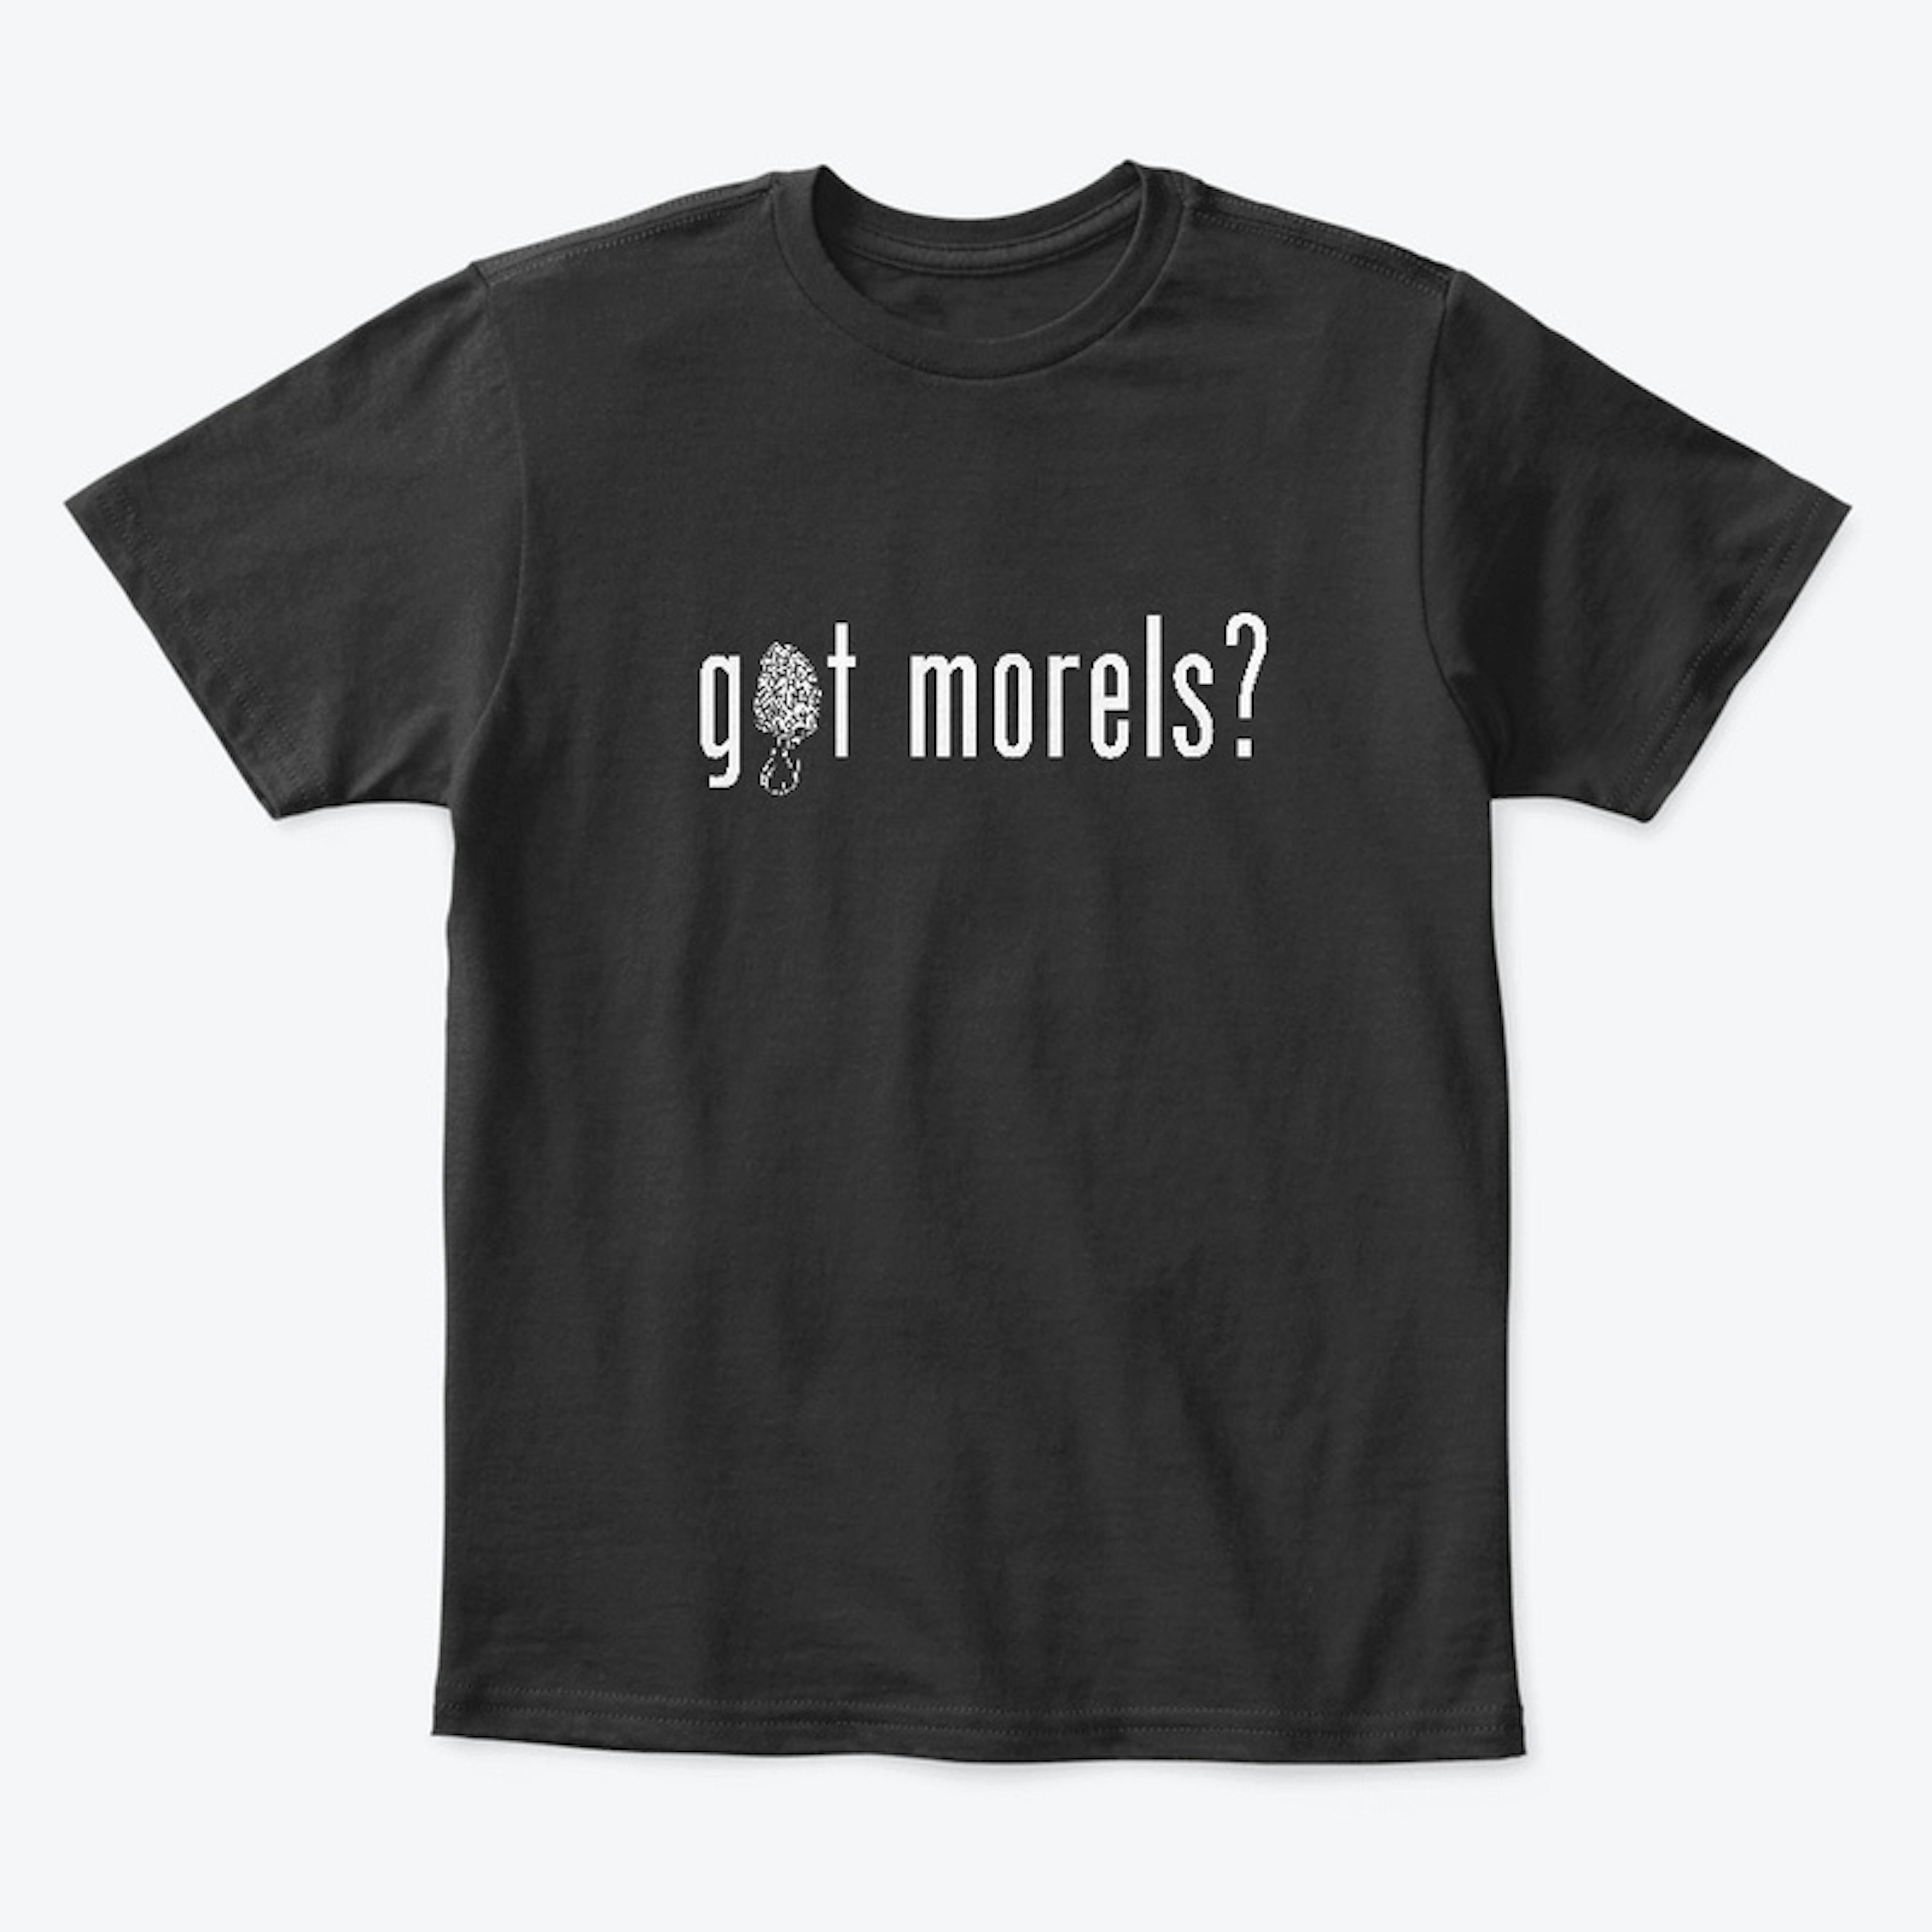 got morels?